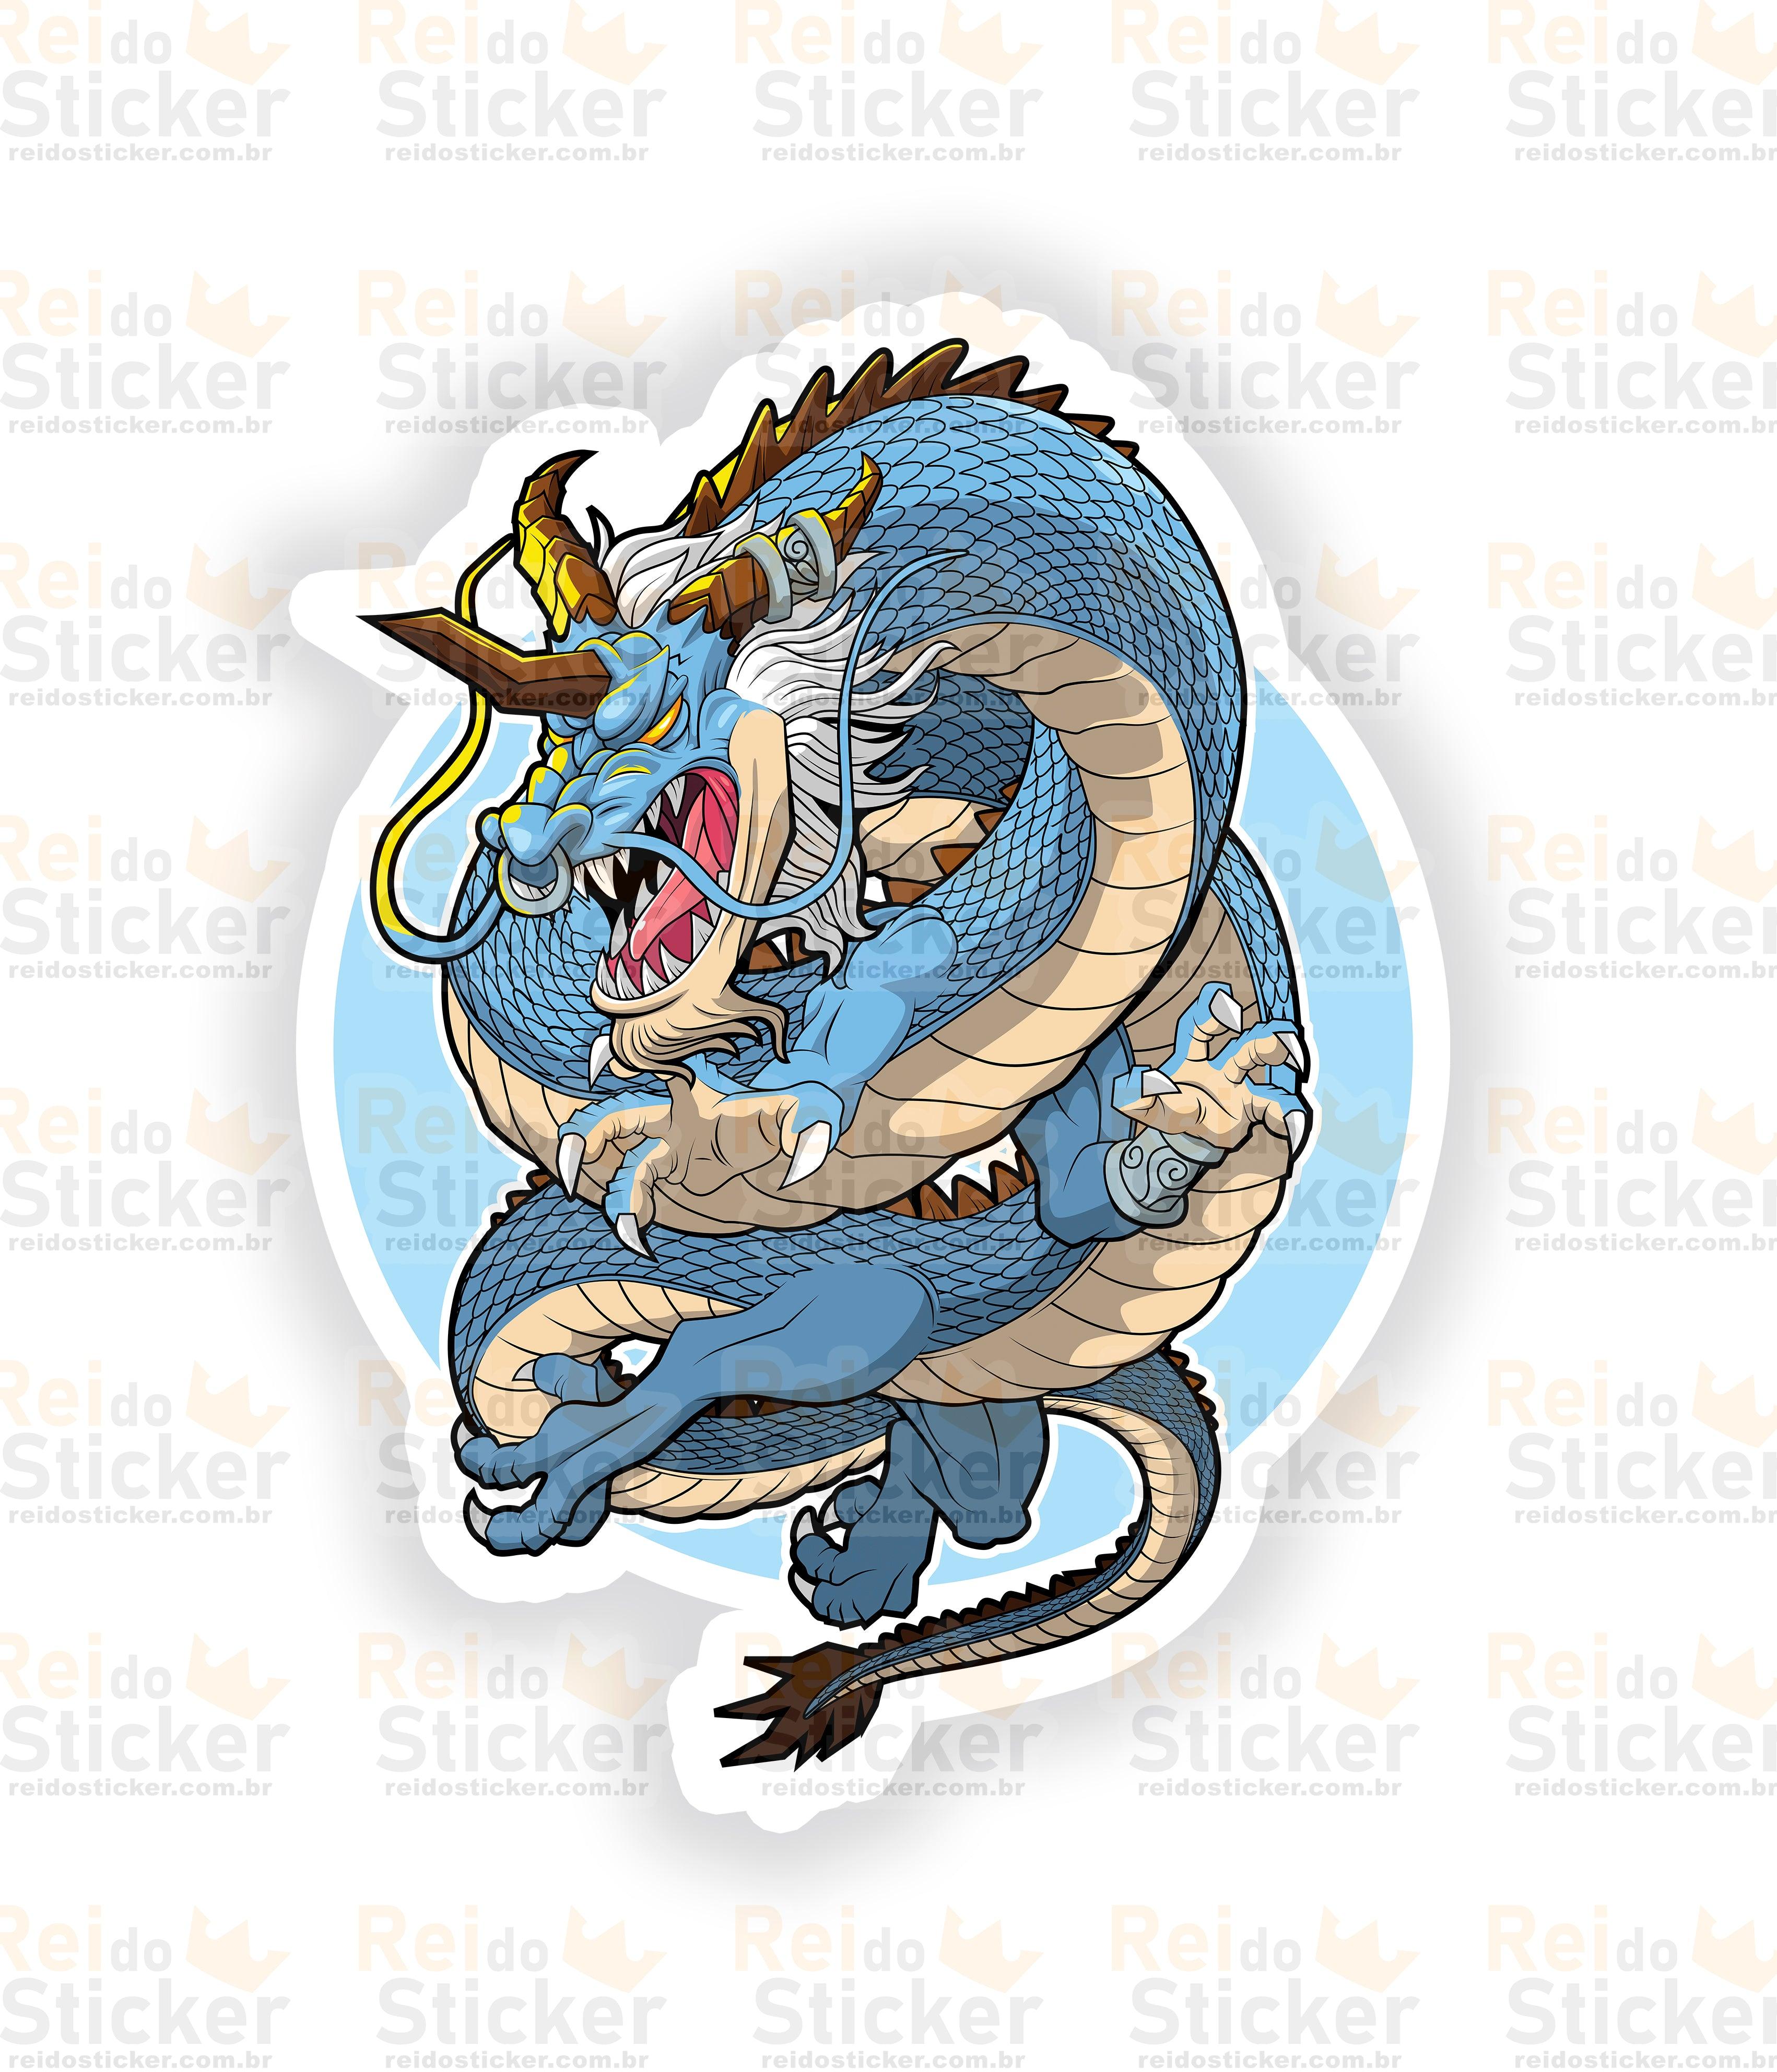 Dragão Azul - Rei do Sticker